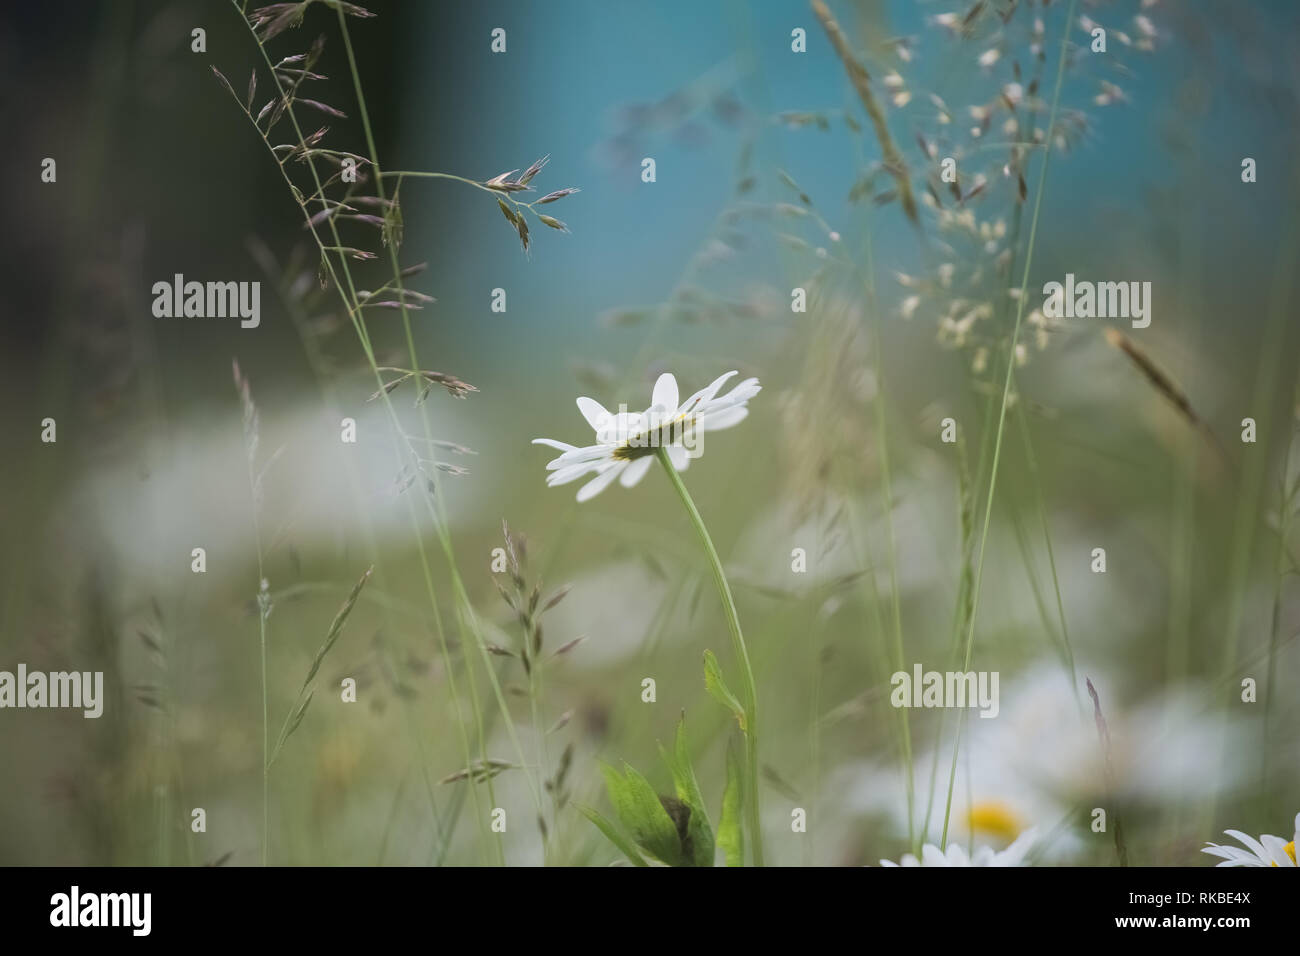 Schönen weißen Gänseblümchen Blumen wachsen außerhalb in den Wilden grünen Gras im grünen Wiese. Horizontale Farbfotografie. Stockfoto